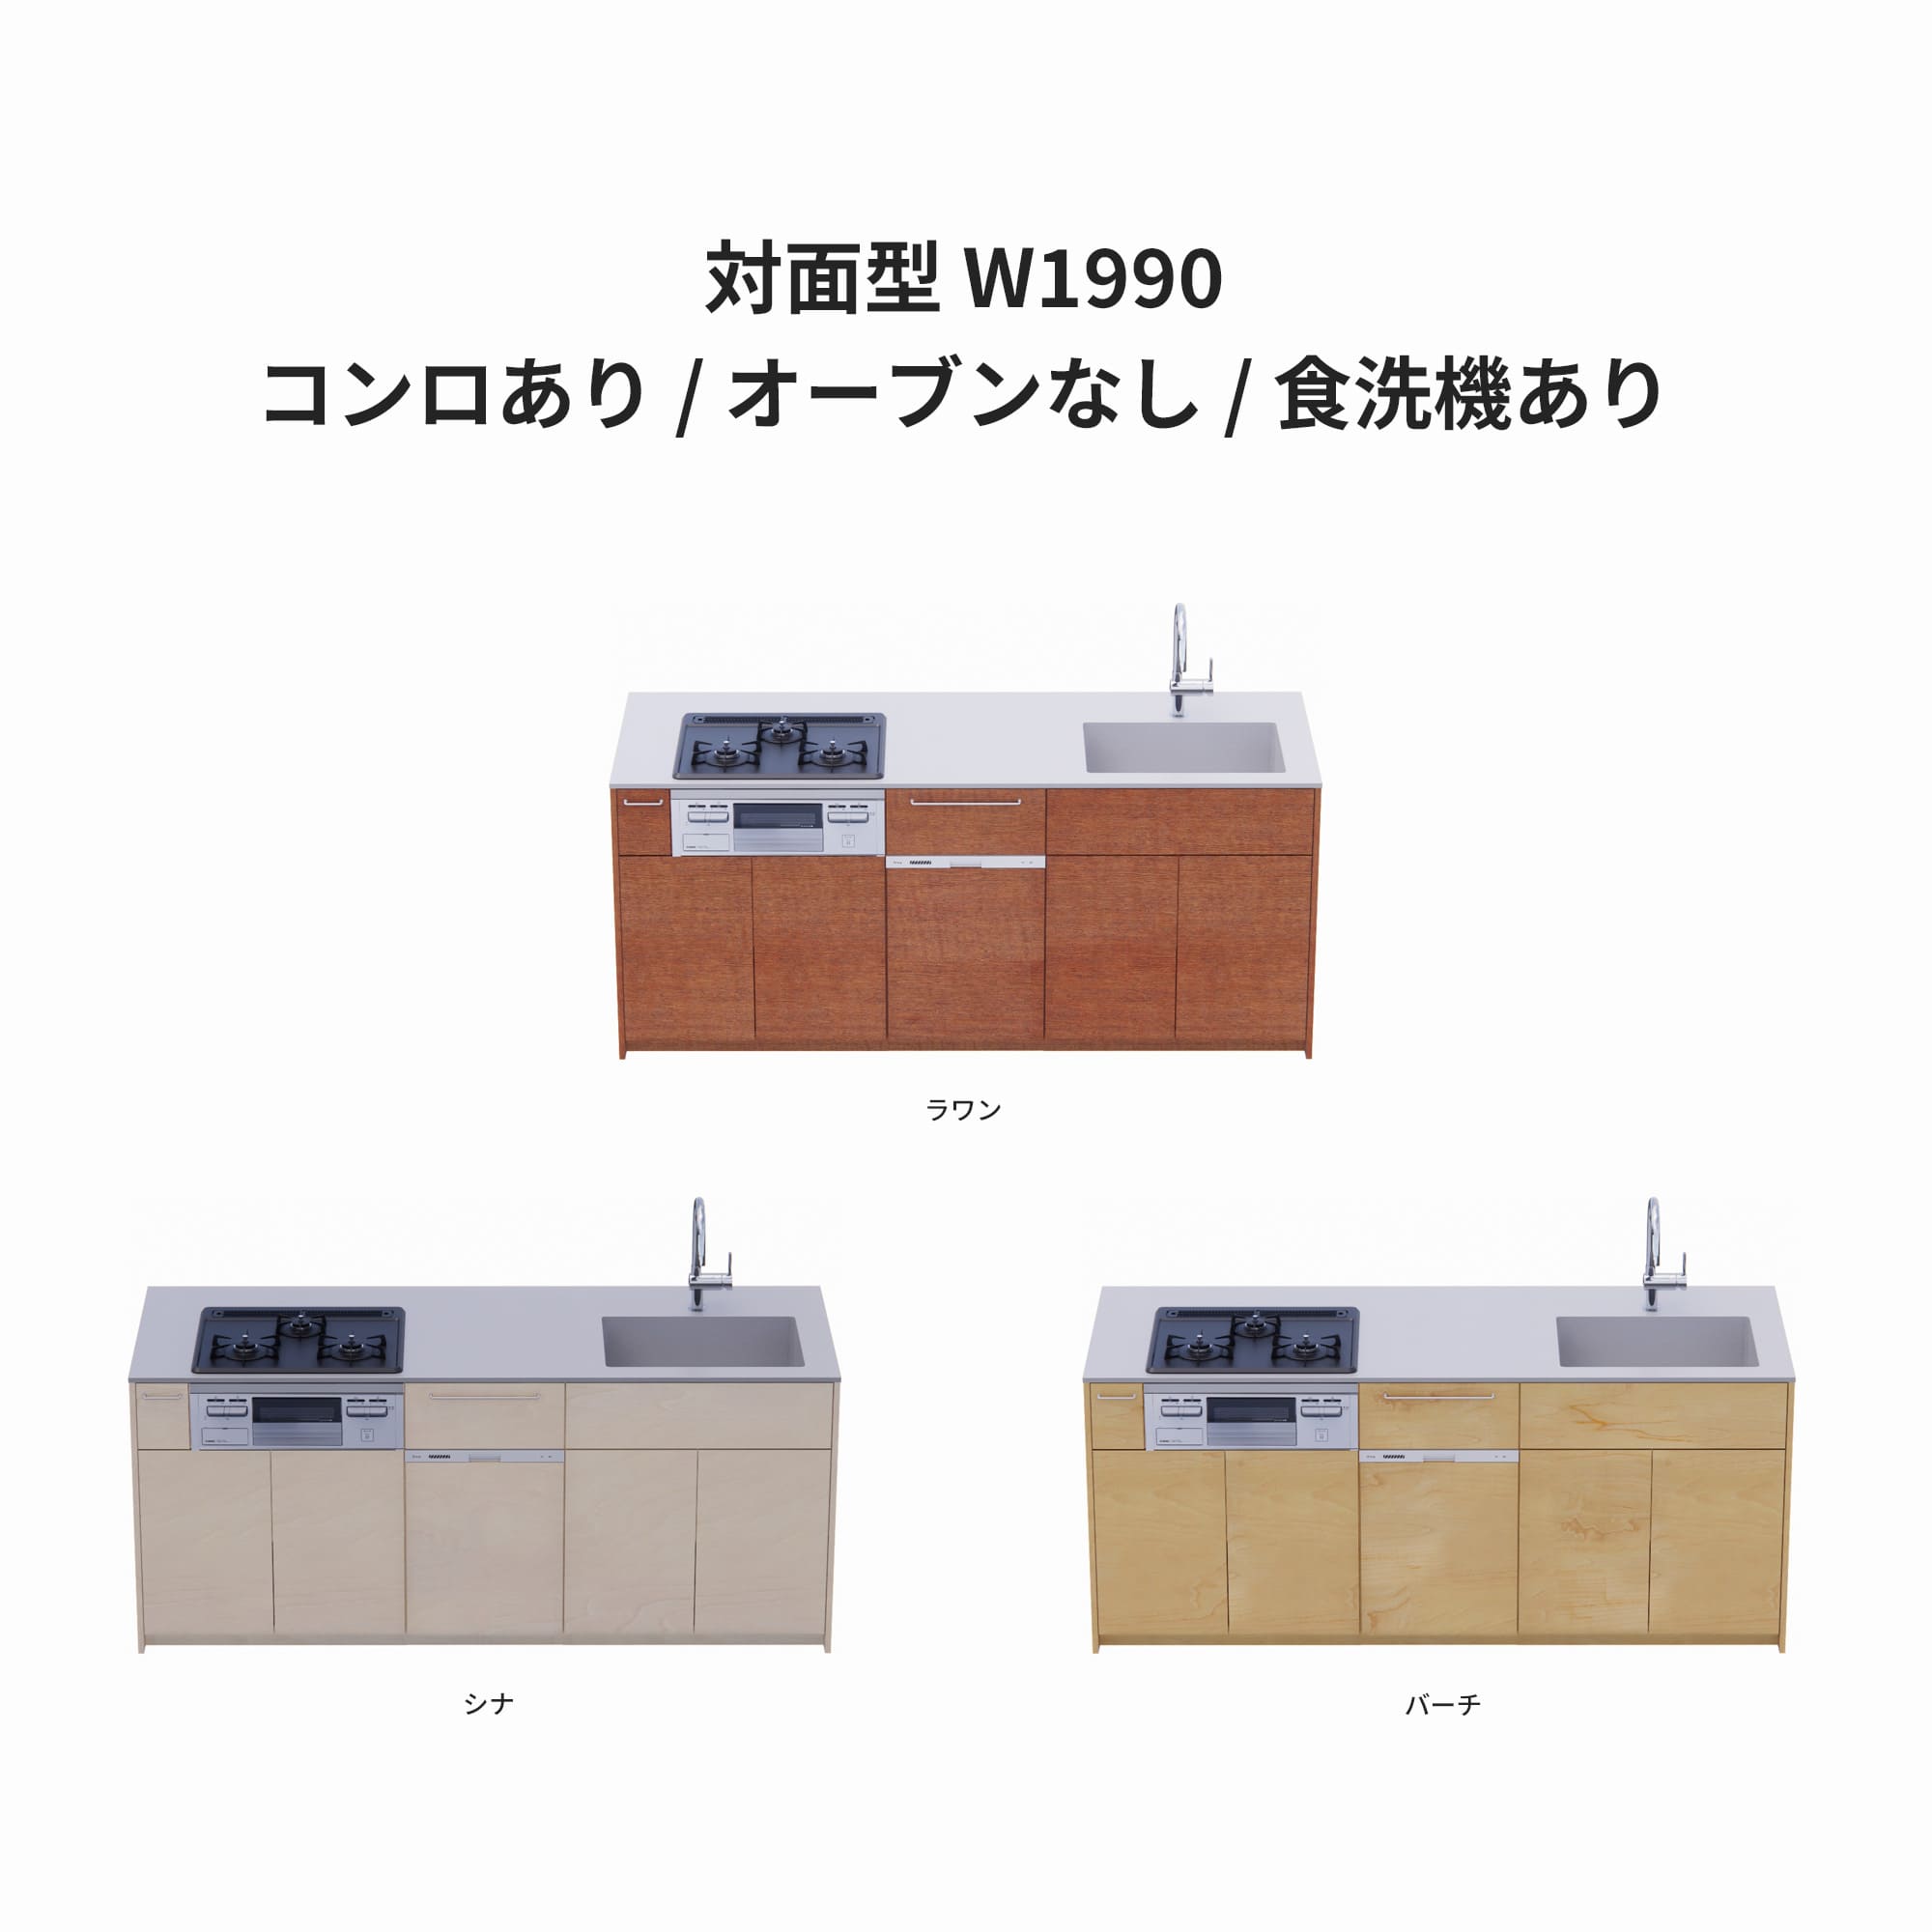 木製システムキッチン 対面型 W1990・コンロあり / オーブンなし / 食洗機あり KB-KC022-33-G183 ラワン・シナ・バーチが選択できます